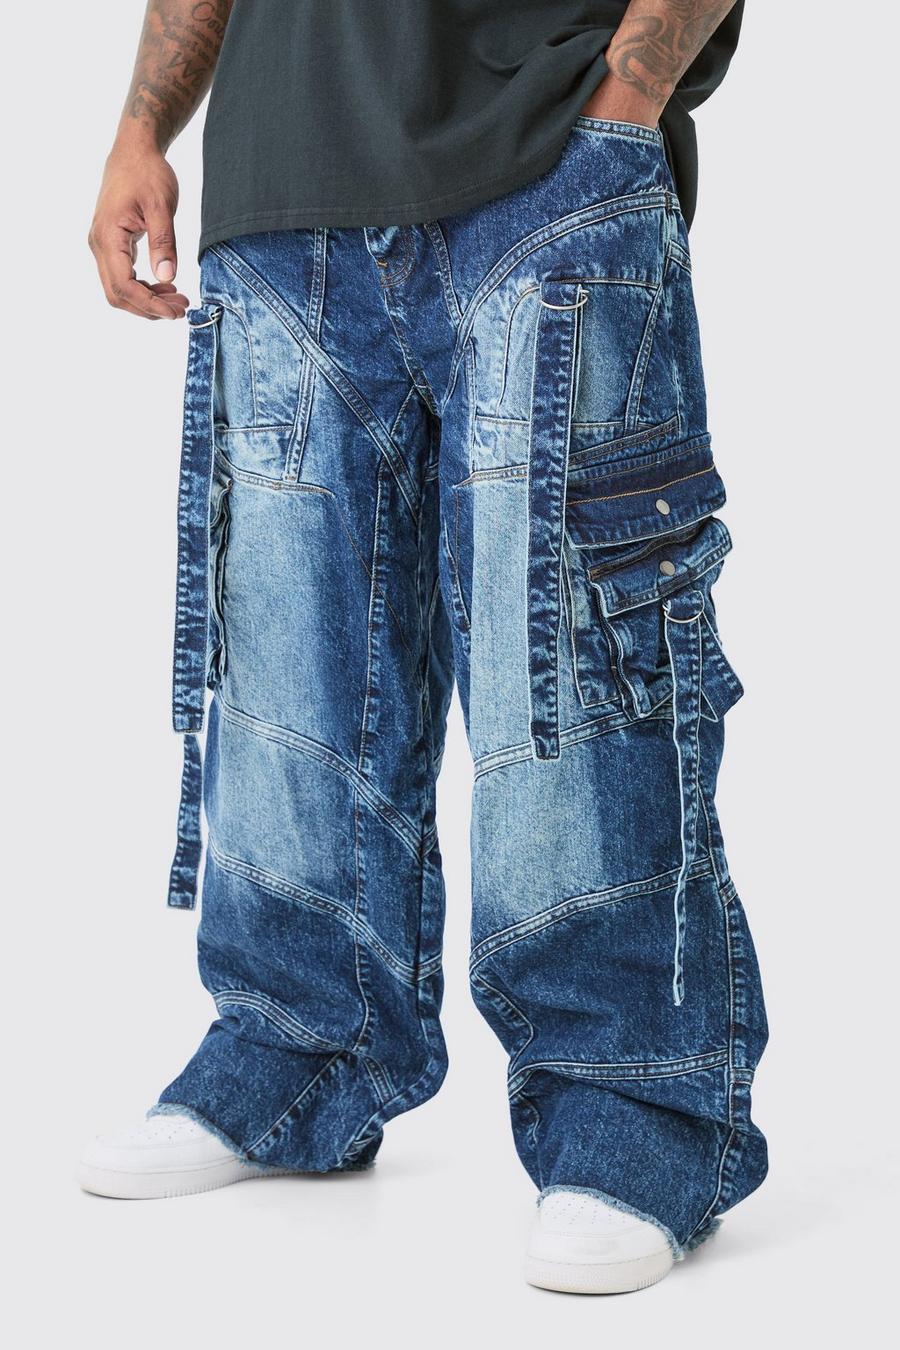 Jeans Plus Size extra comodi con fascette rigide e fibbia, Indigo